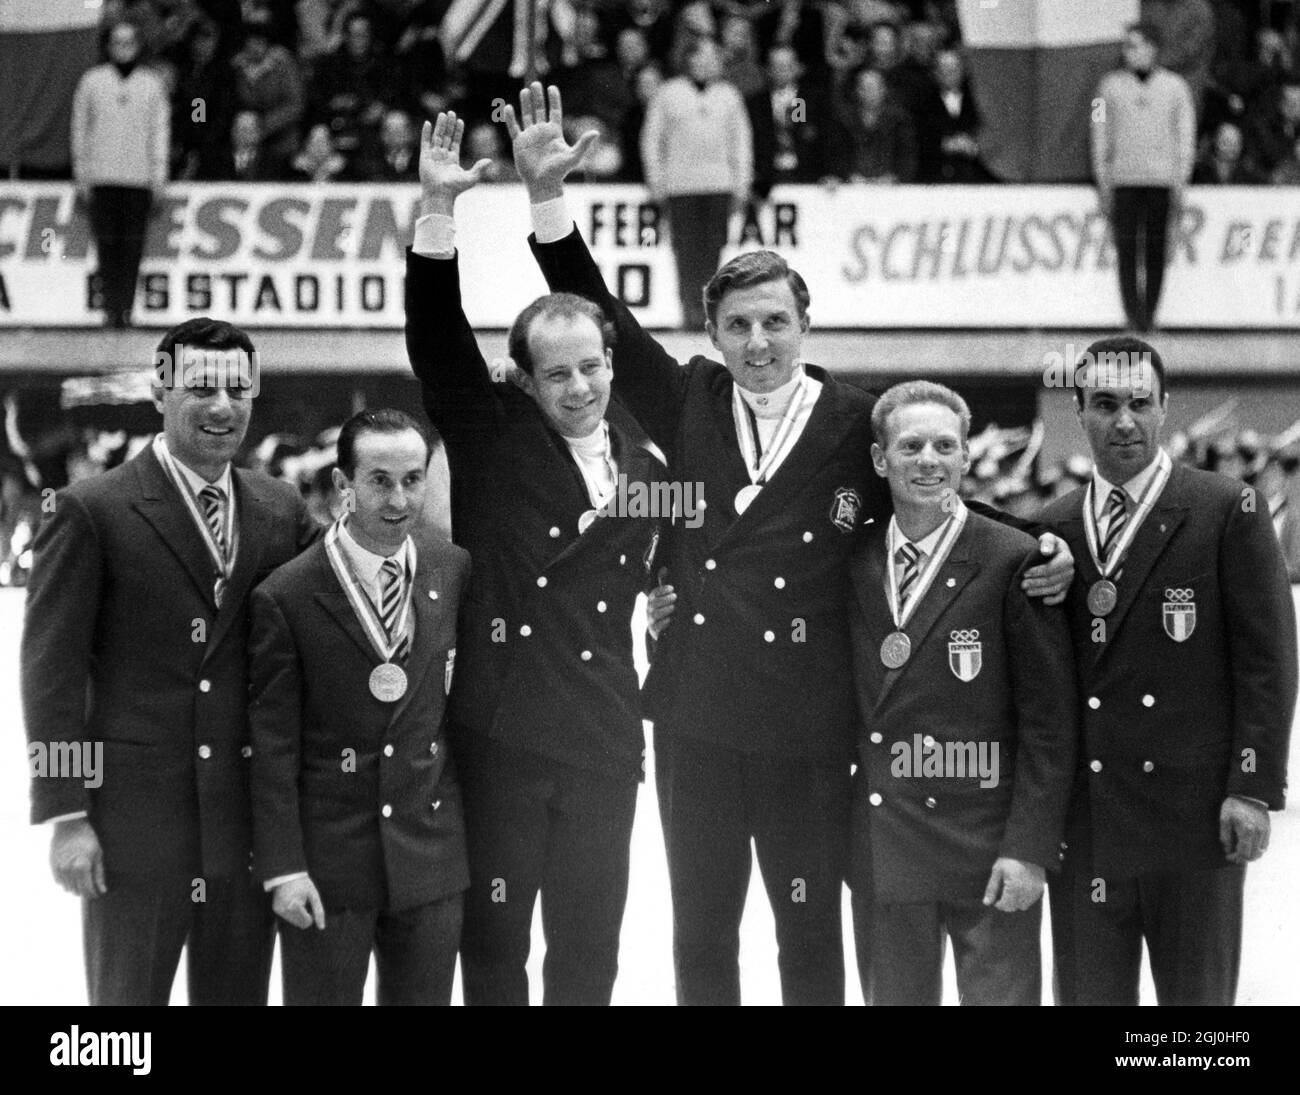 Olympische Winterspiele 1964 - Innsbruck, Österreich die britischen Goldmedaillengewinnerinnen bei den neunten Olympischen Winterspielen, Tony Nash (links) der Pilot und Robin Dixon, im Bild nach dem Gewinn der ersten beiden Läufe im Zweimann-bob in Igls bei Innsbruck am 31. Januar. Am Samstag gewann das britische Paar die beiden zweiten Läufe und wurde damit Großbritanniens erste olympische Goldmedaillengewinnerin seit Jeanette Altwegg 1952 beim Eiskunstlauf der Frauen gewann. Die Gesamtzeit, die Nash und Dixon für ihre vier Läufe über den 1,506 Meter langen Kurs einfuhren, betrug vier Minuten und 21.9 Sekunden. - 1. Februar 1964 - ©TopFoto Stockfoto